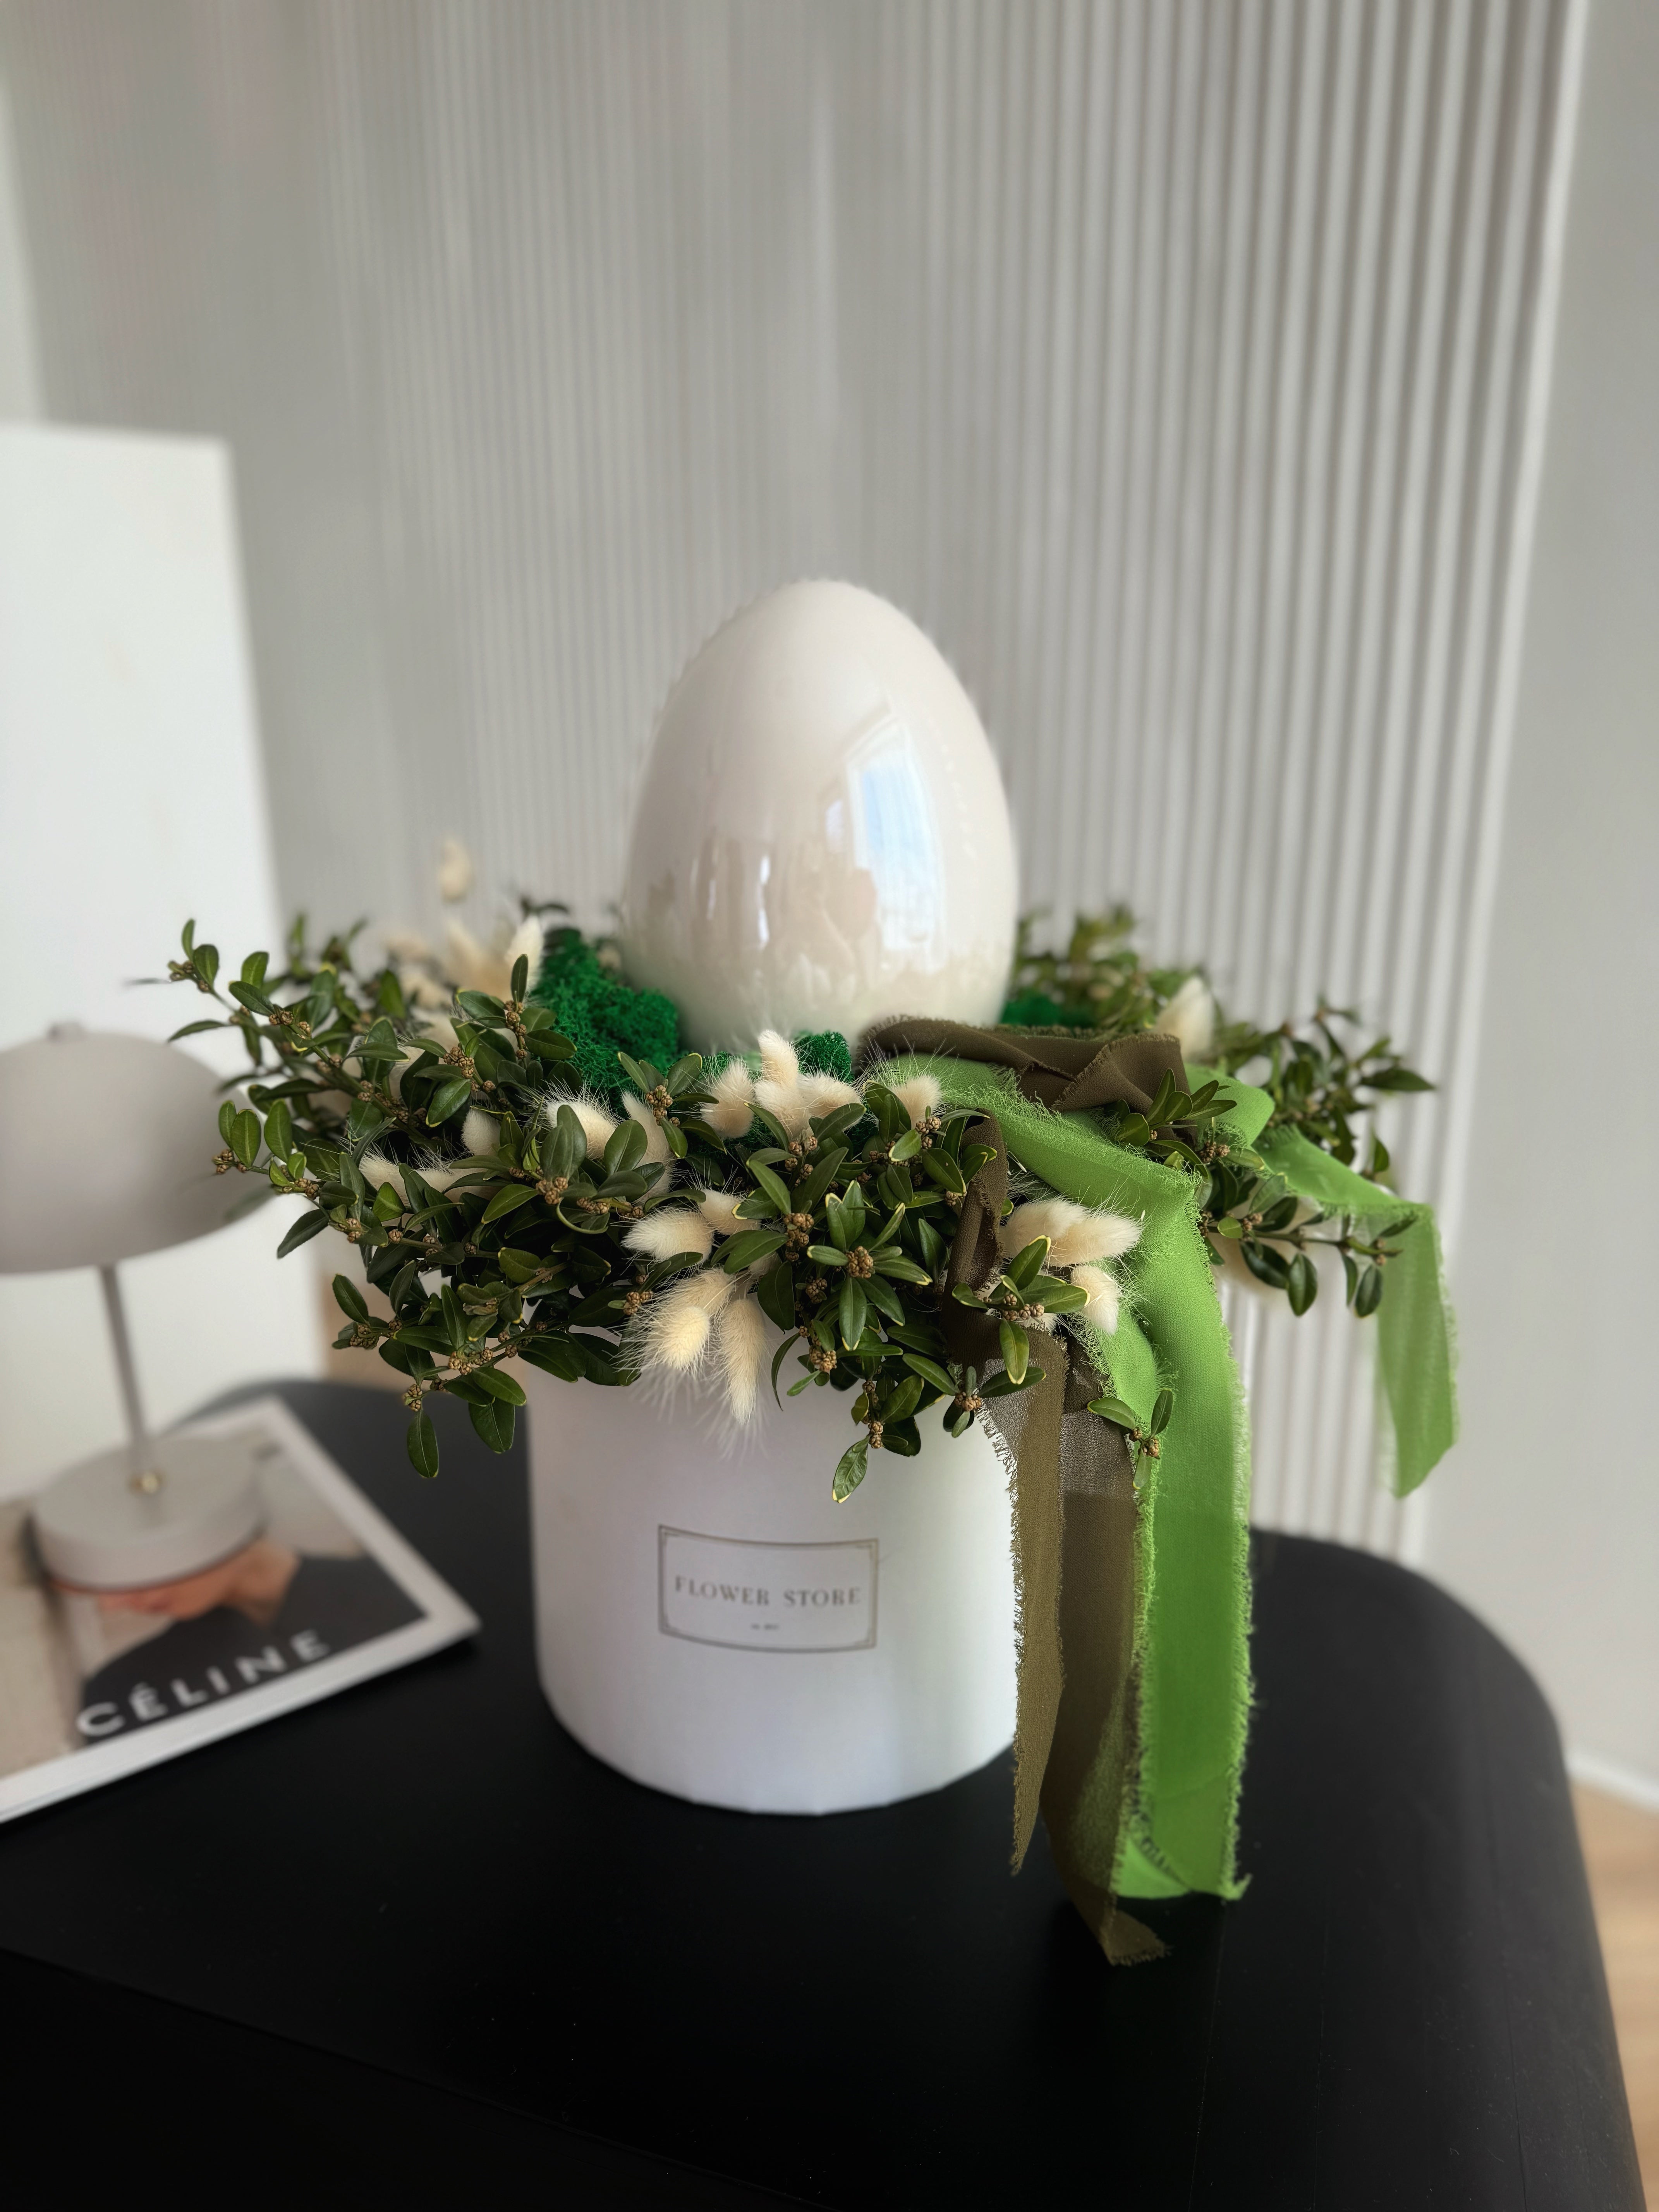 Kompozycja Wielkanocna Flowerbox Biała Harmonia z Bukszpanem i Ceramicznym Jajem